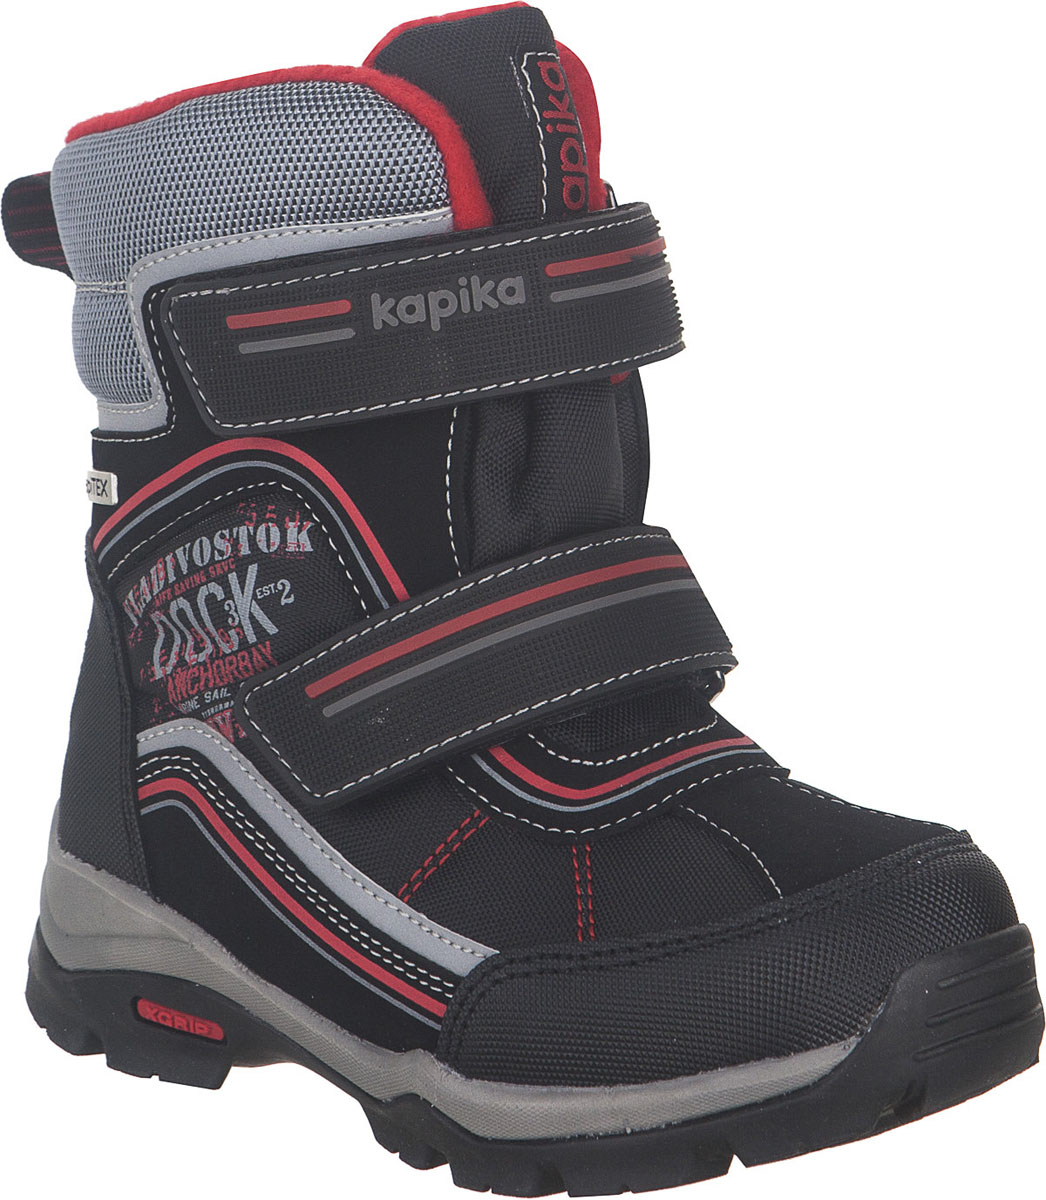 Ботинки для мальчика Kapika KapiTEX, цвет: черный, красный. 42244-1. Размер 31